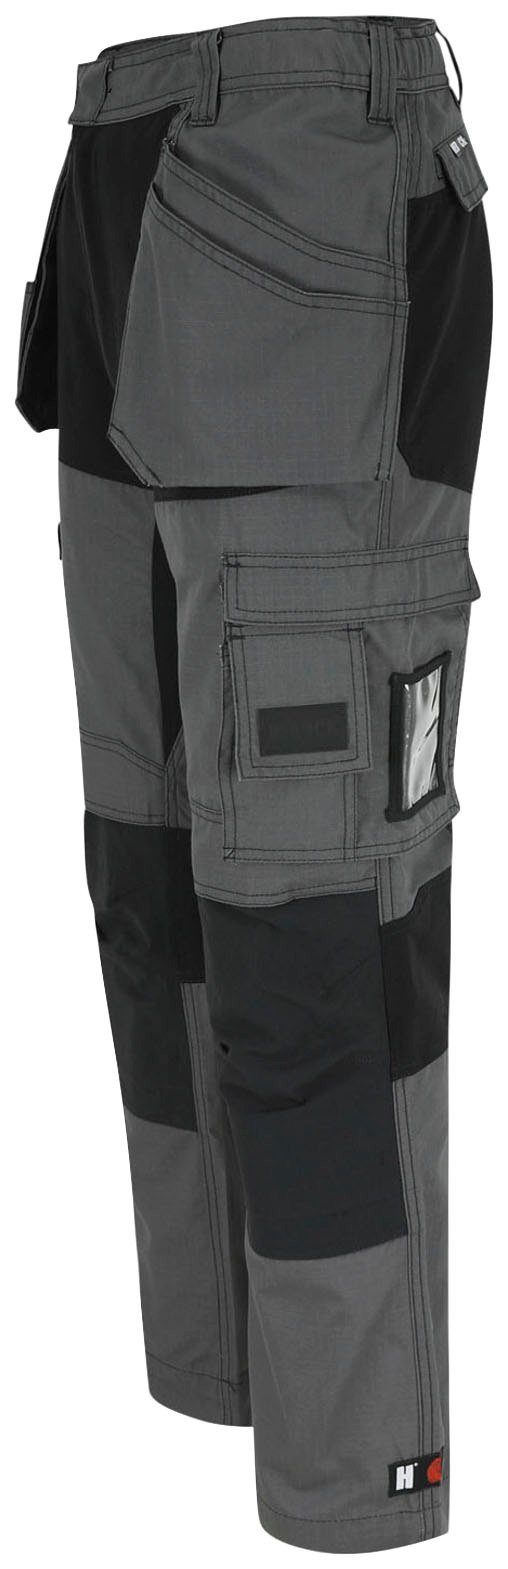 mit Arbeitshose grau-schwarz Multi-Pocket-Hose und Hose 2 Herock 4-Wege-Stretch-Teilen Spector Nageltaschen festen